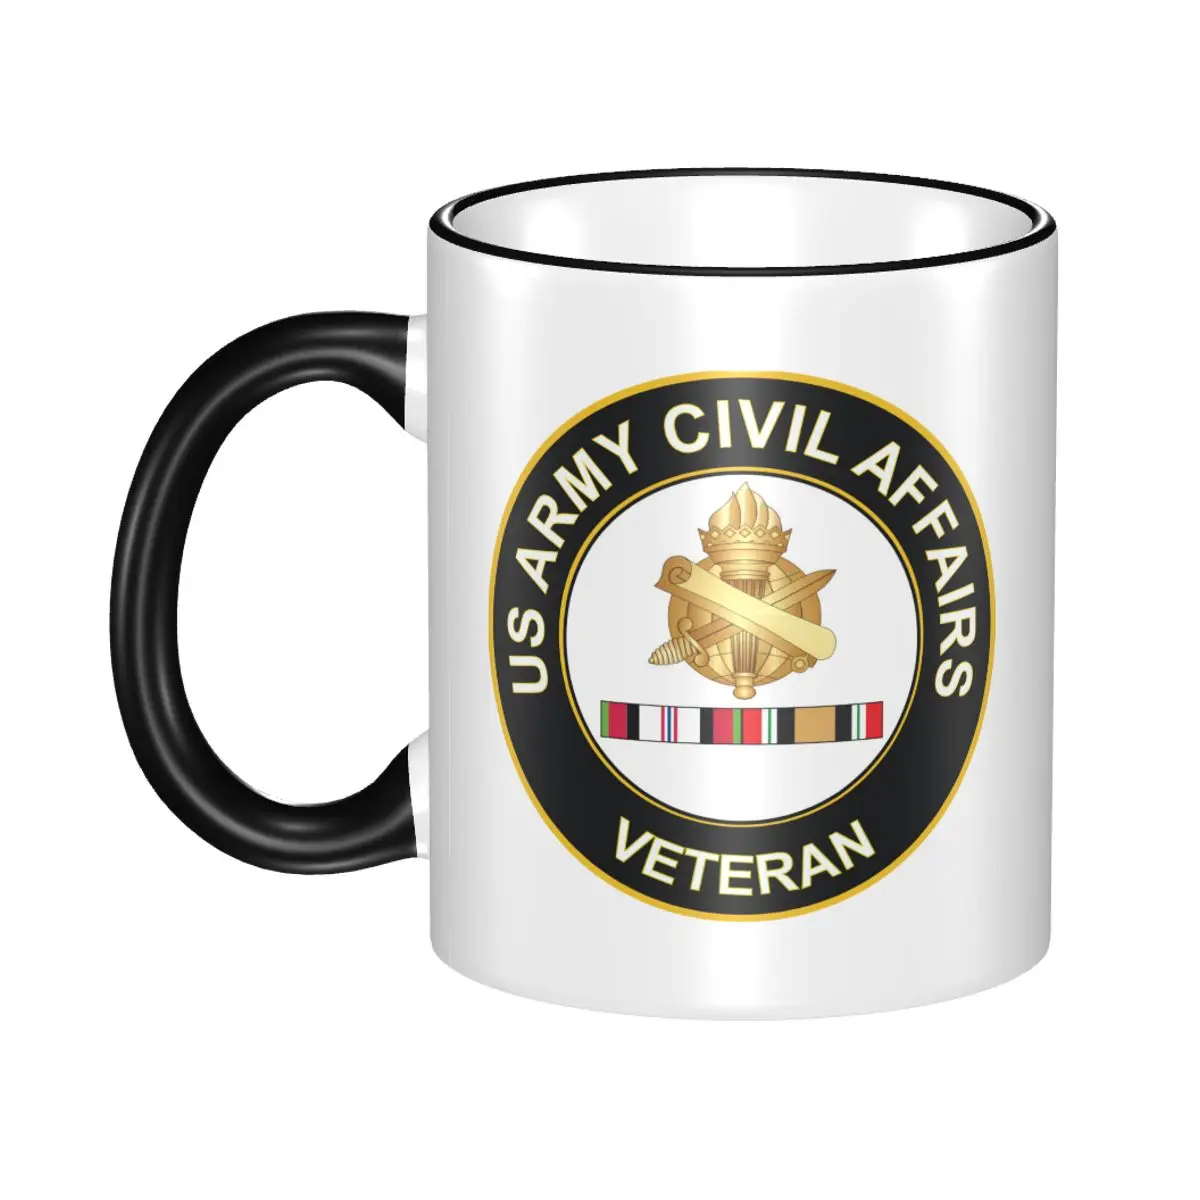 

Керамические кофейные кружки чайная чашка армия гражданские дела Афганистан и Ирак наклейка лучший подарок для пенсионеров